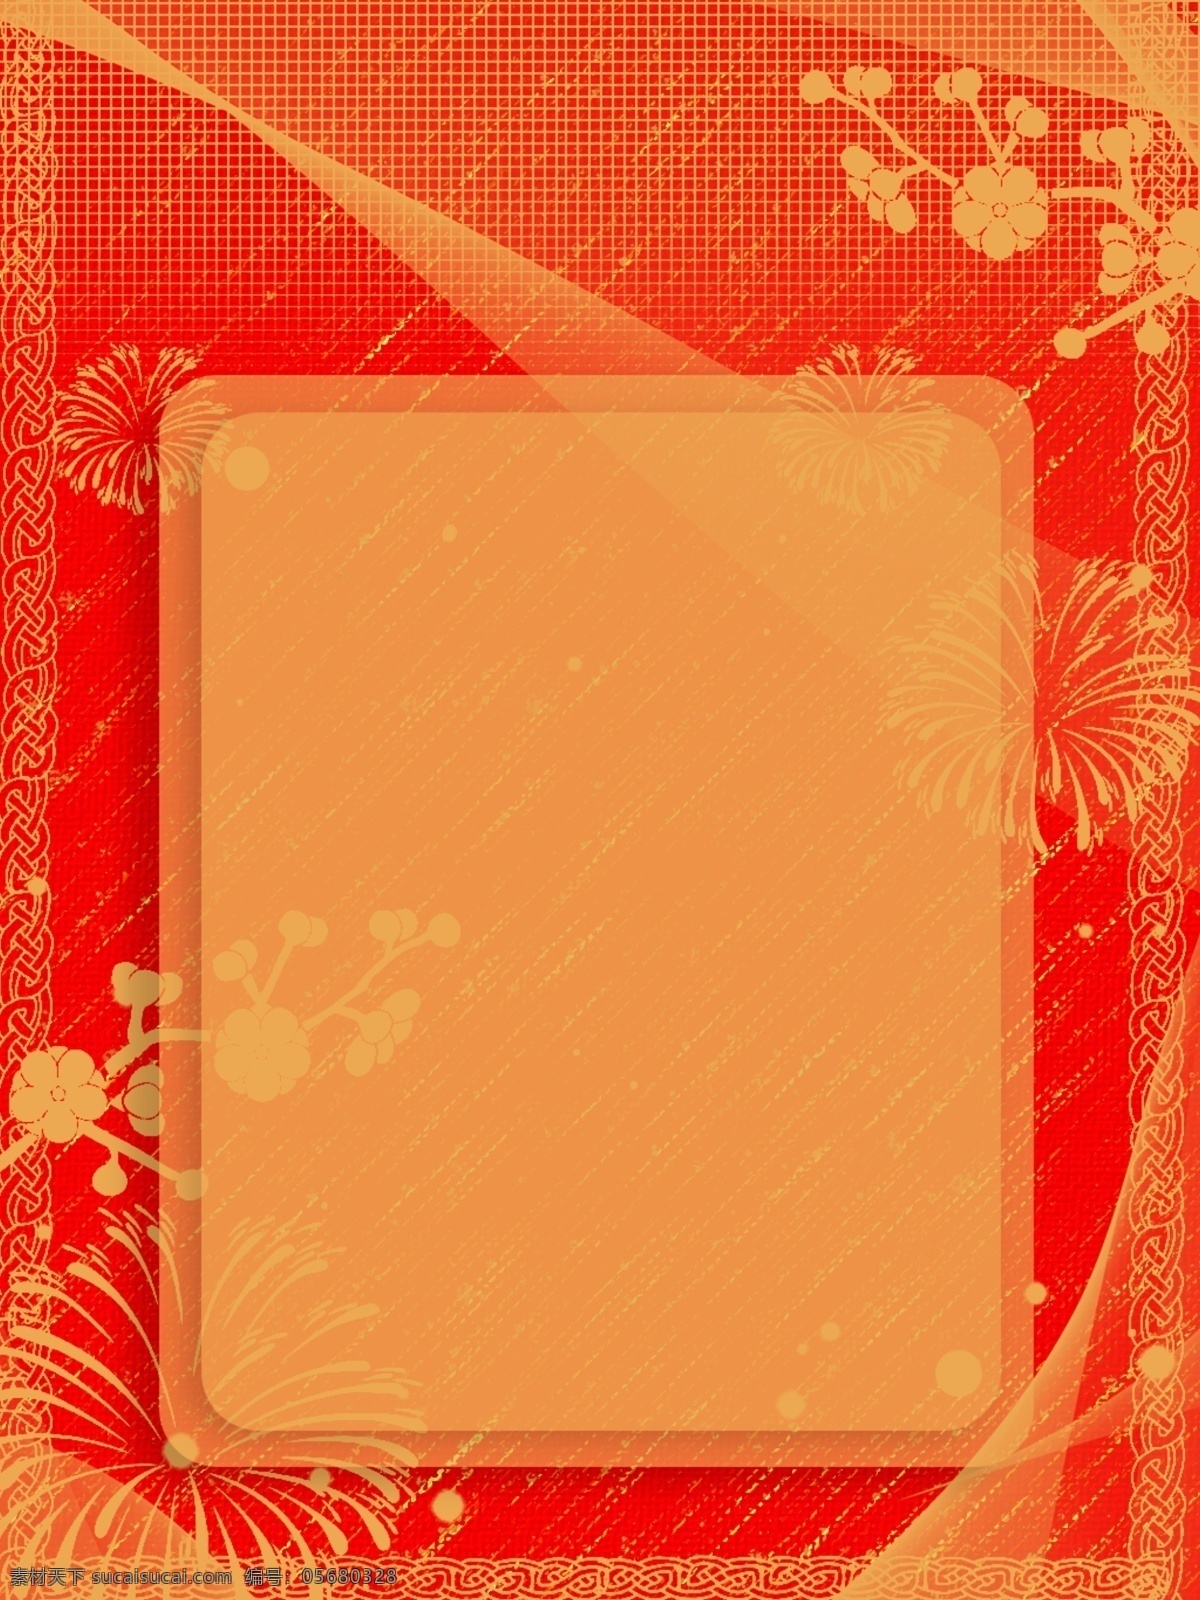 原创 中国 风 喜庆 广告 背景 广告背景 唯美 中国风 红色 清新促销 文艺 典雅